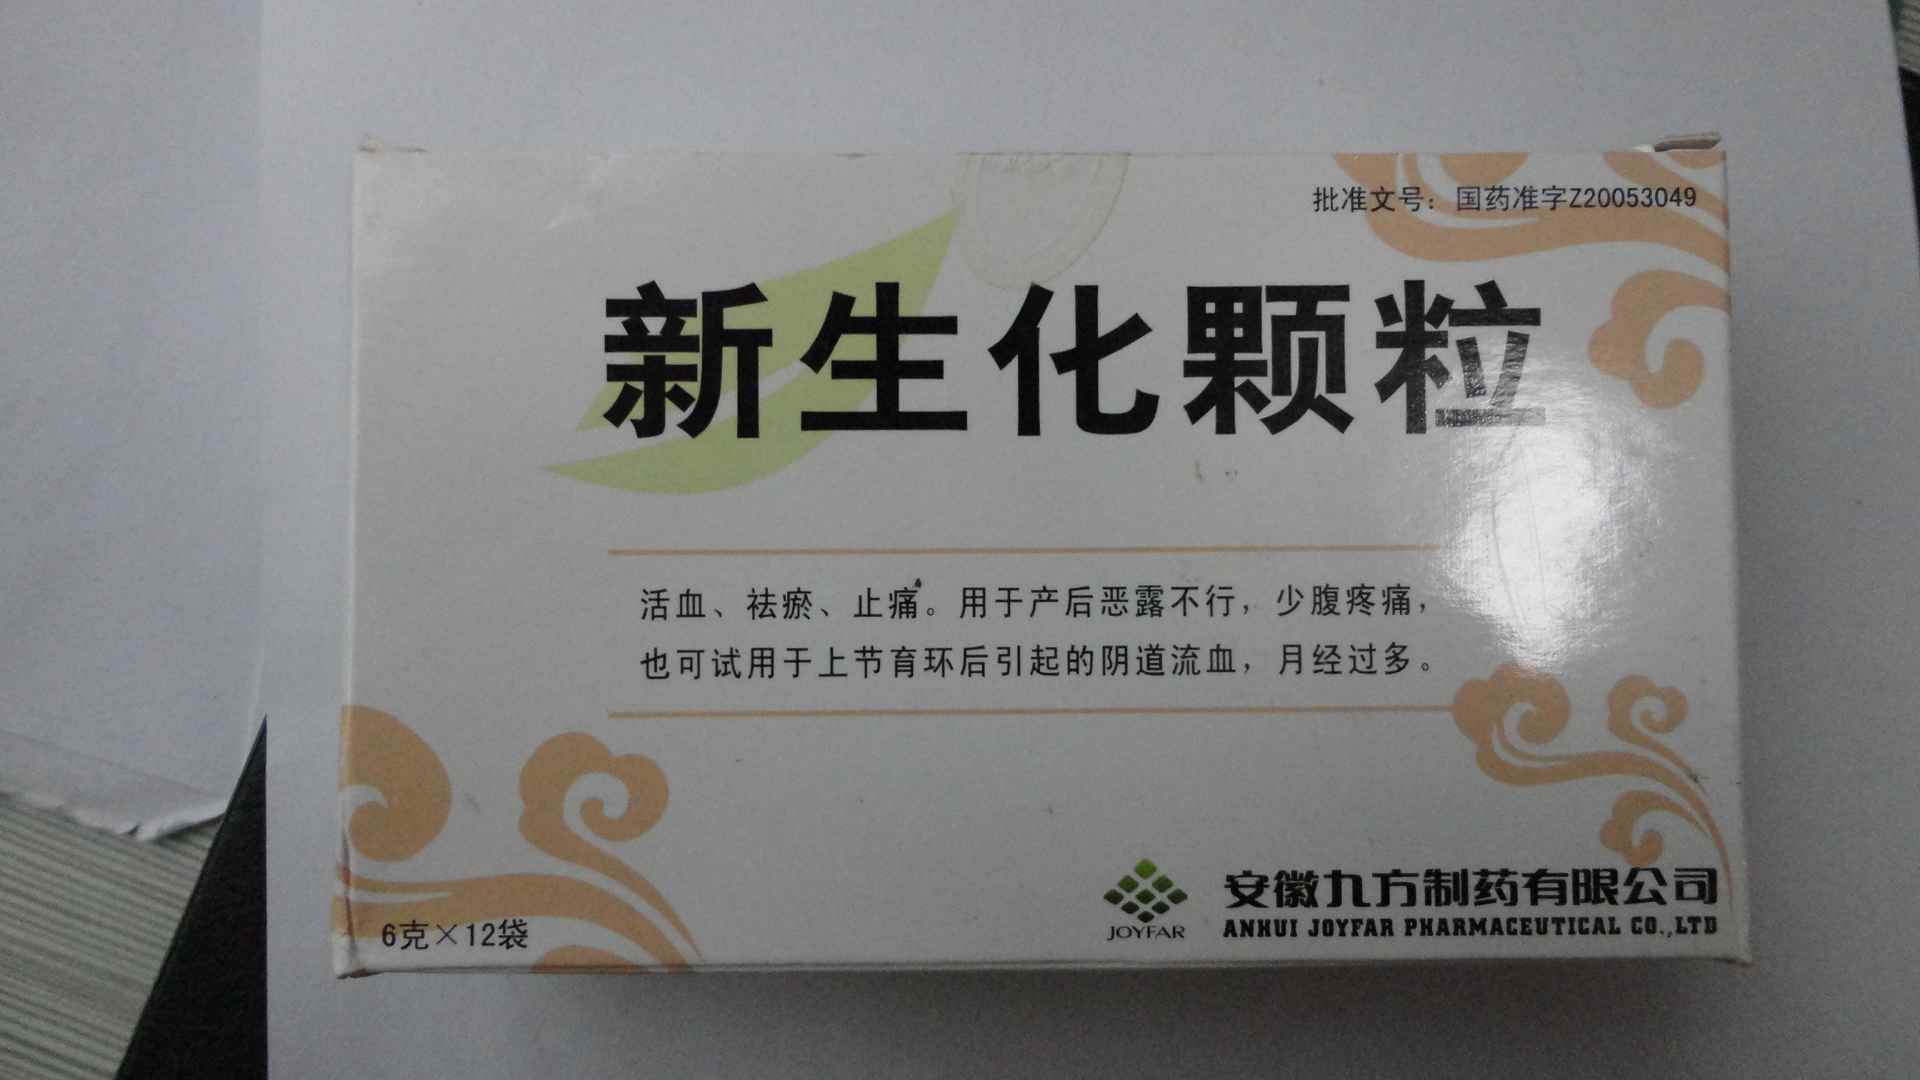 【九方】新生化颗粒-安徽九方制药有限公司